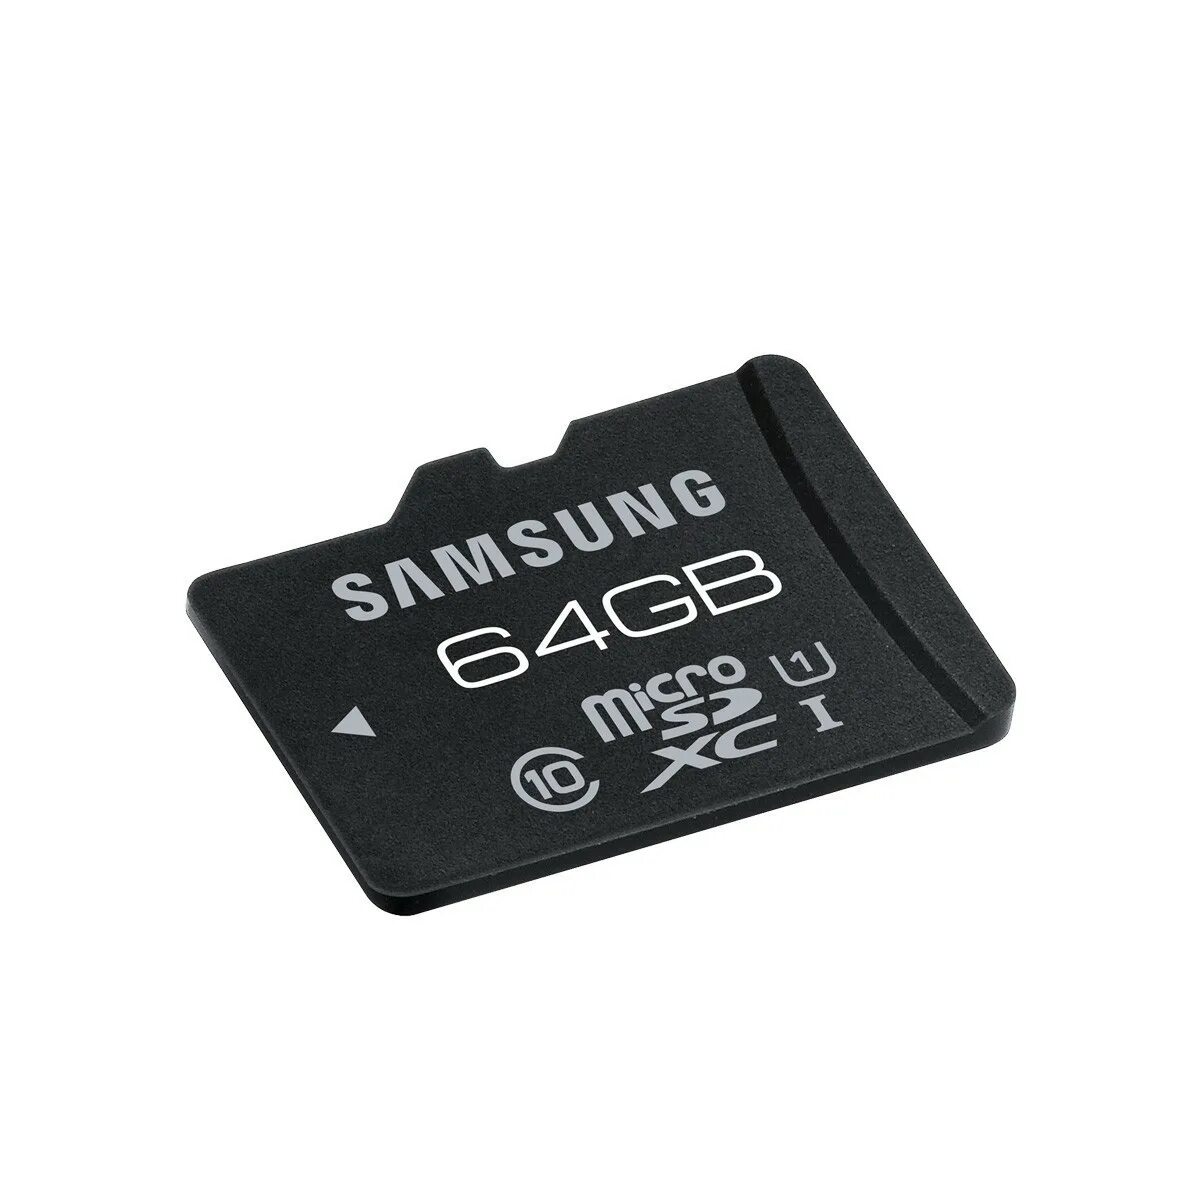 Флеша карты samsung. Микро СД самсунг 32u. 32гб карта памяти Samsung MICROSD. Флешка микро СД 64. Флешка 64 ГБ микро SD.